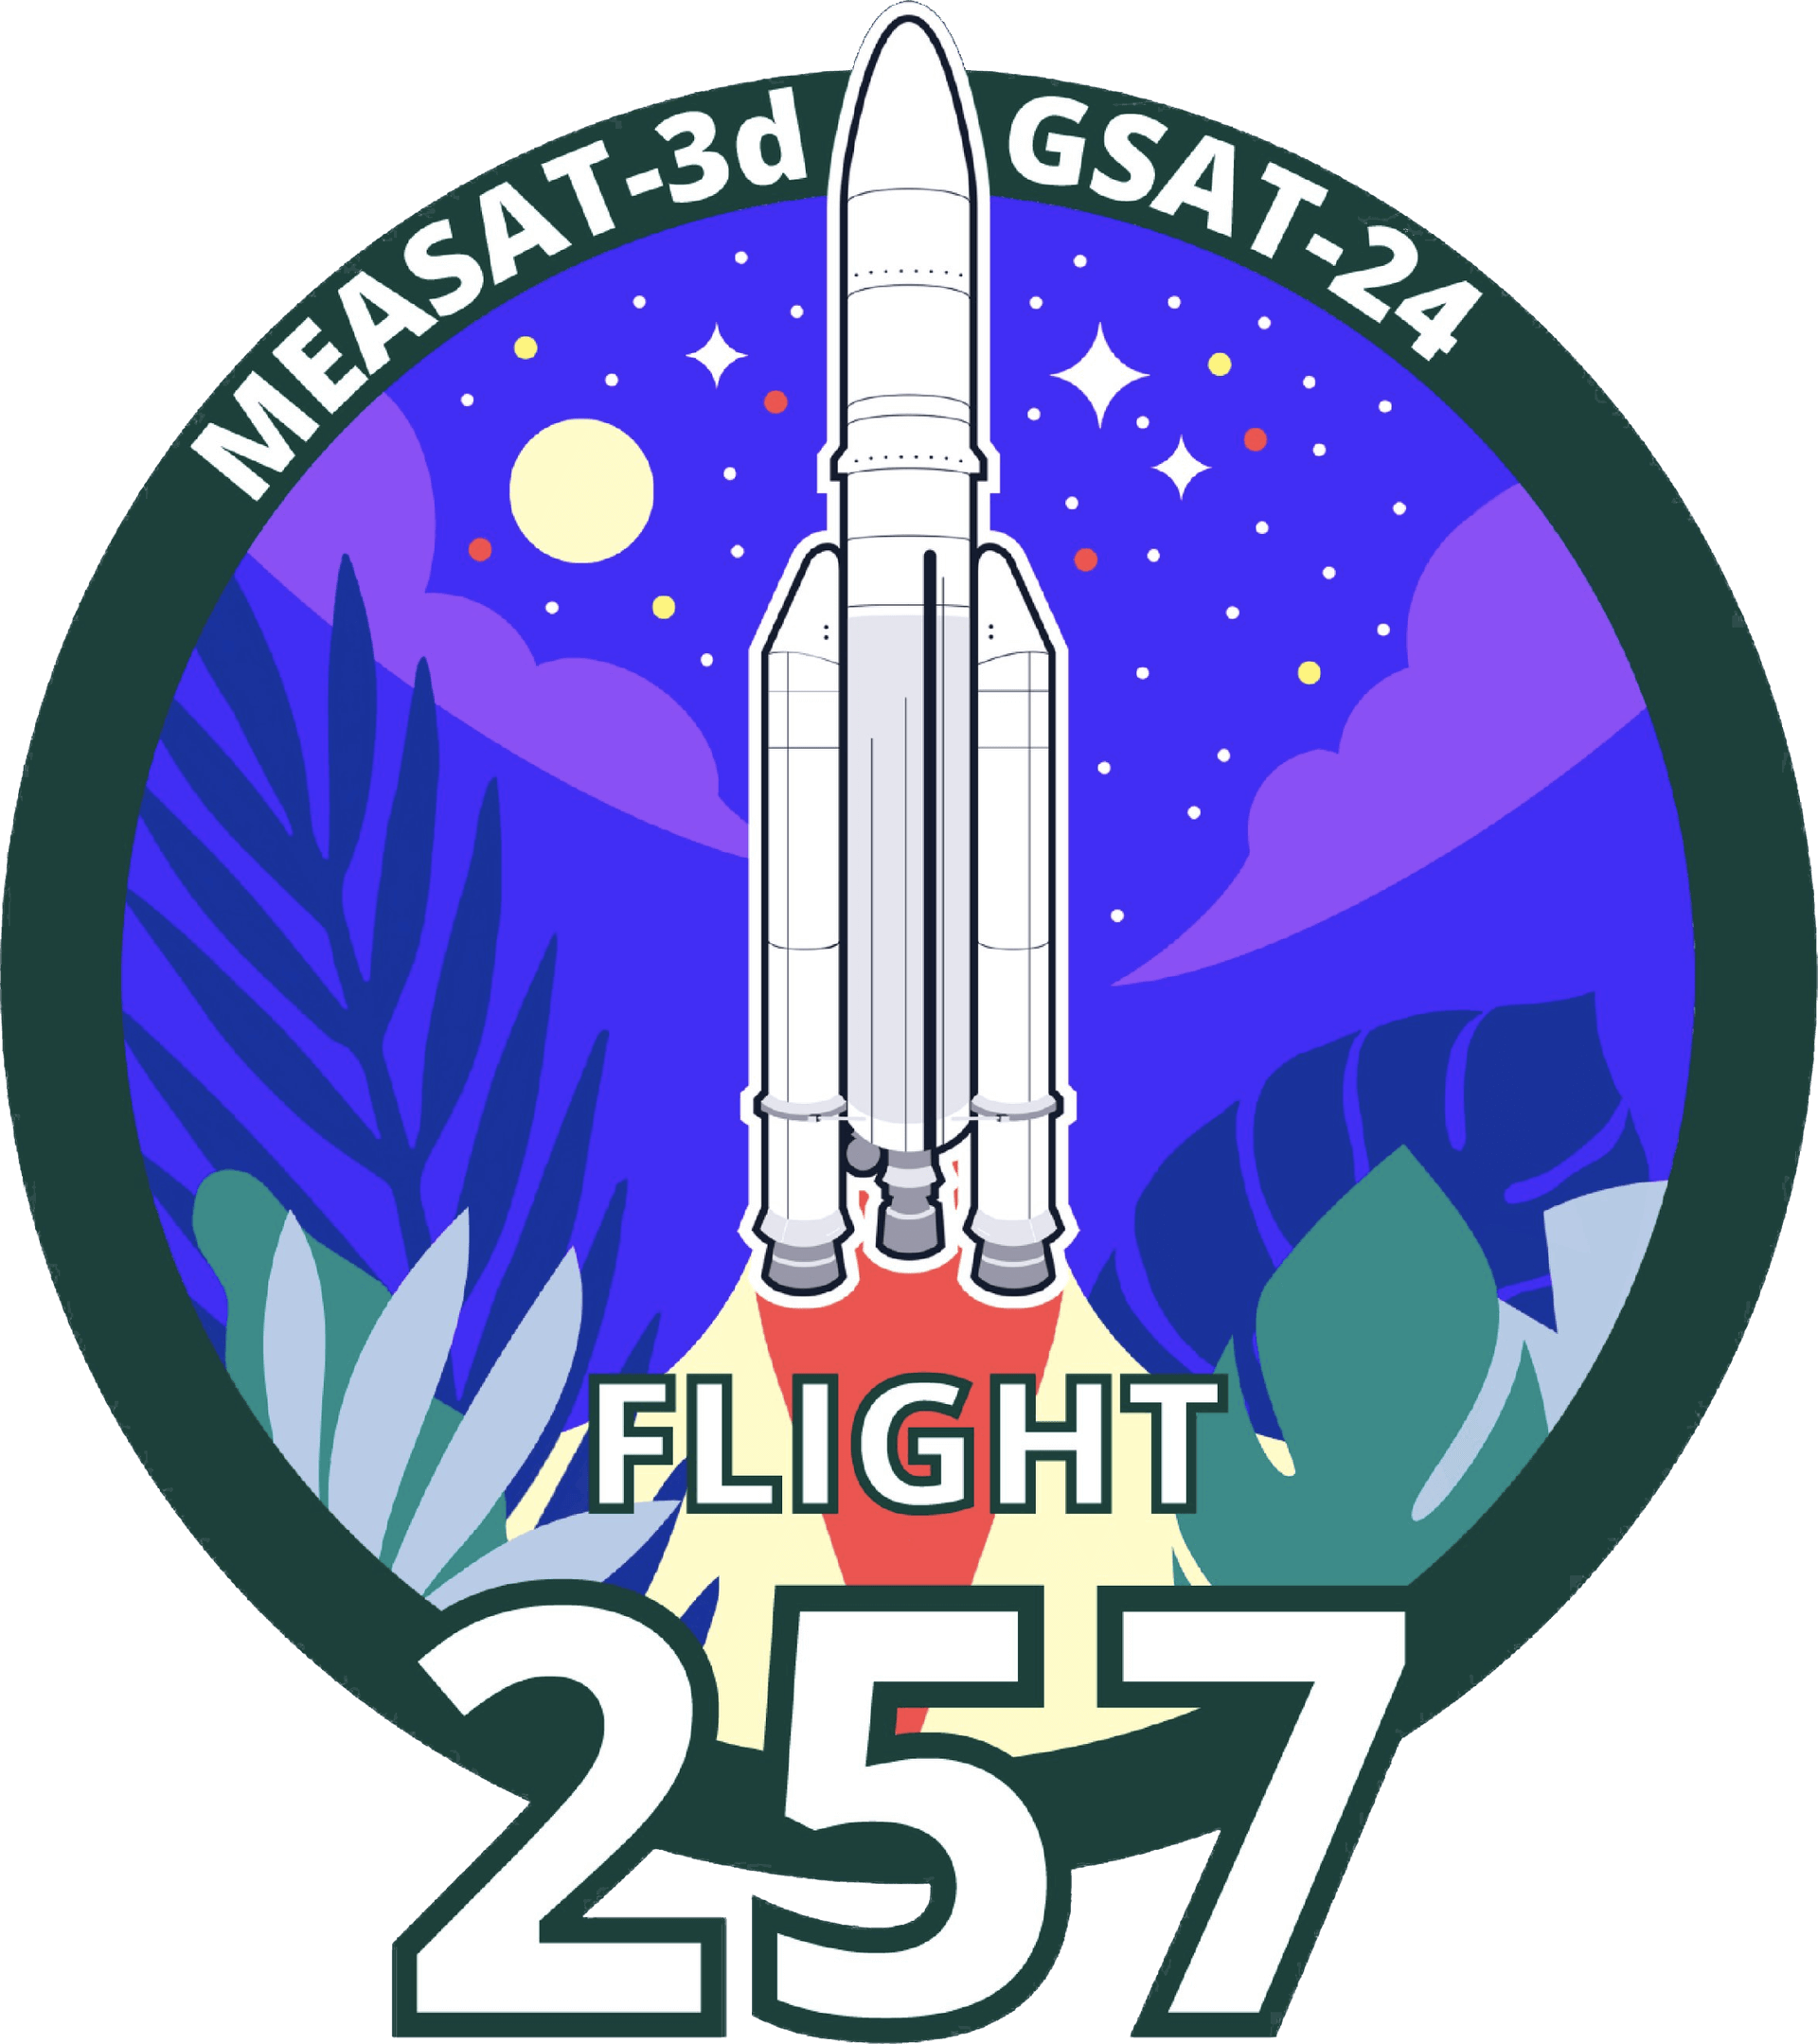 Mission patch for Measat-3d & GSAT 24